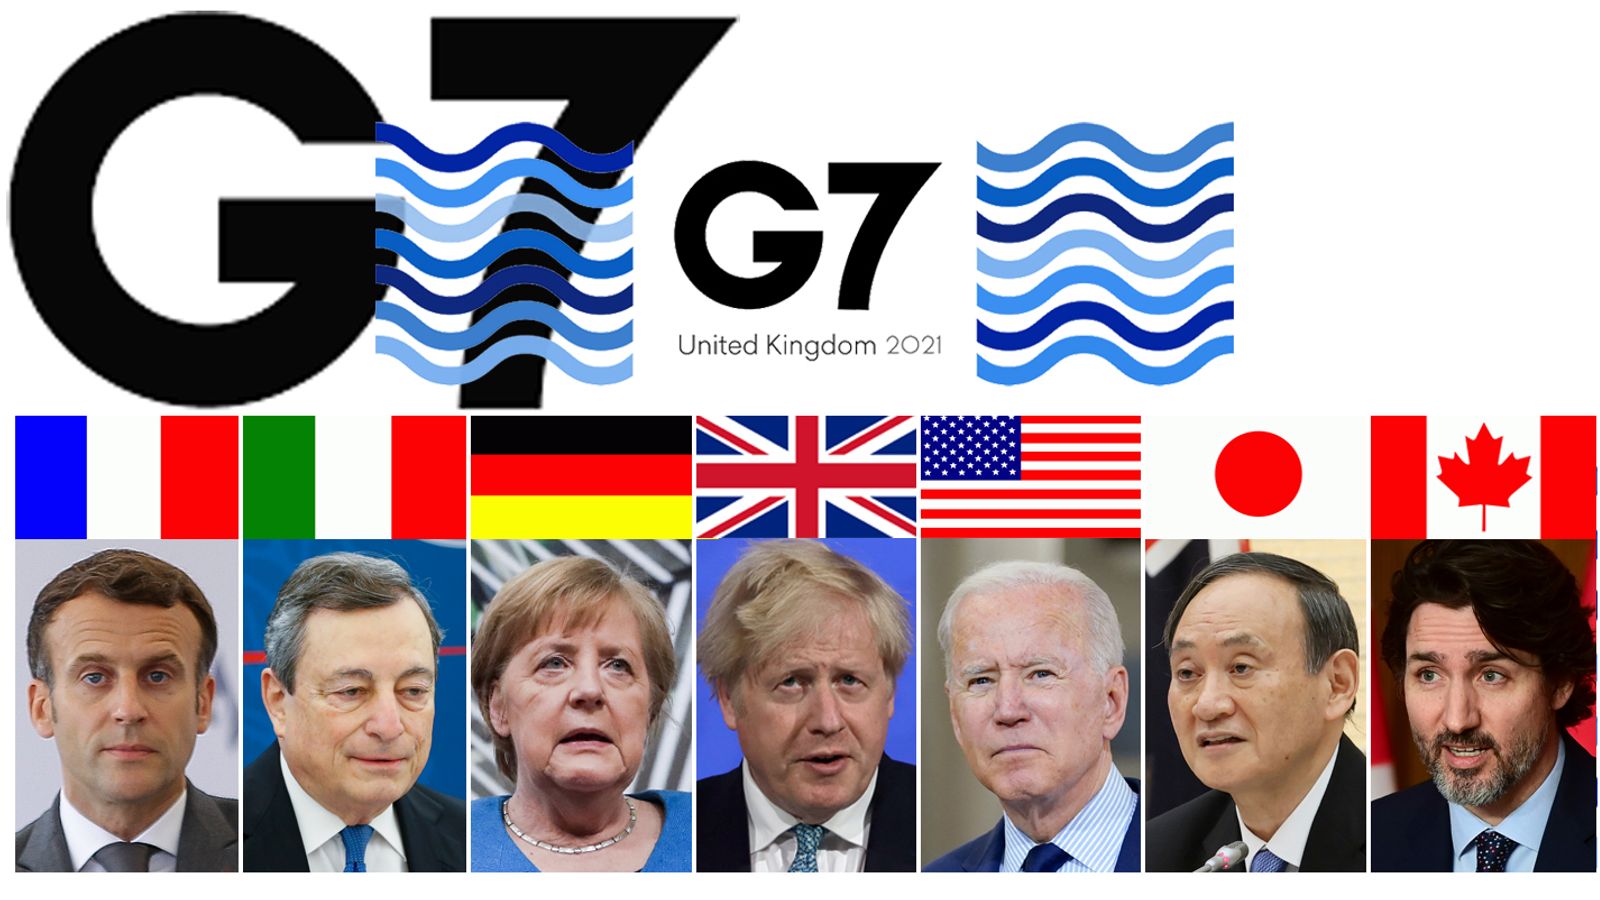 G7